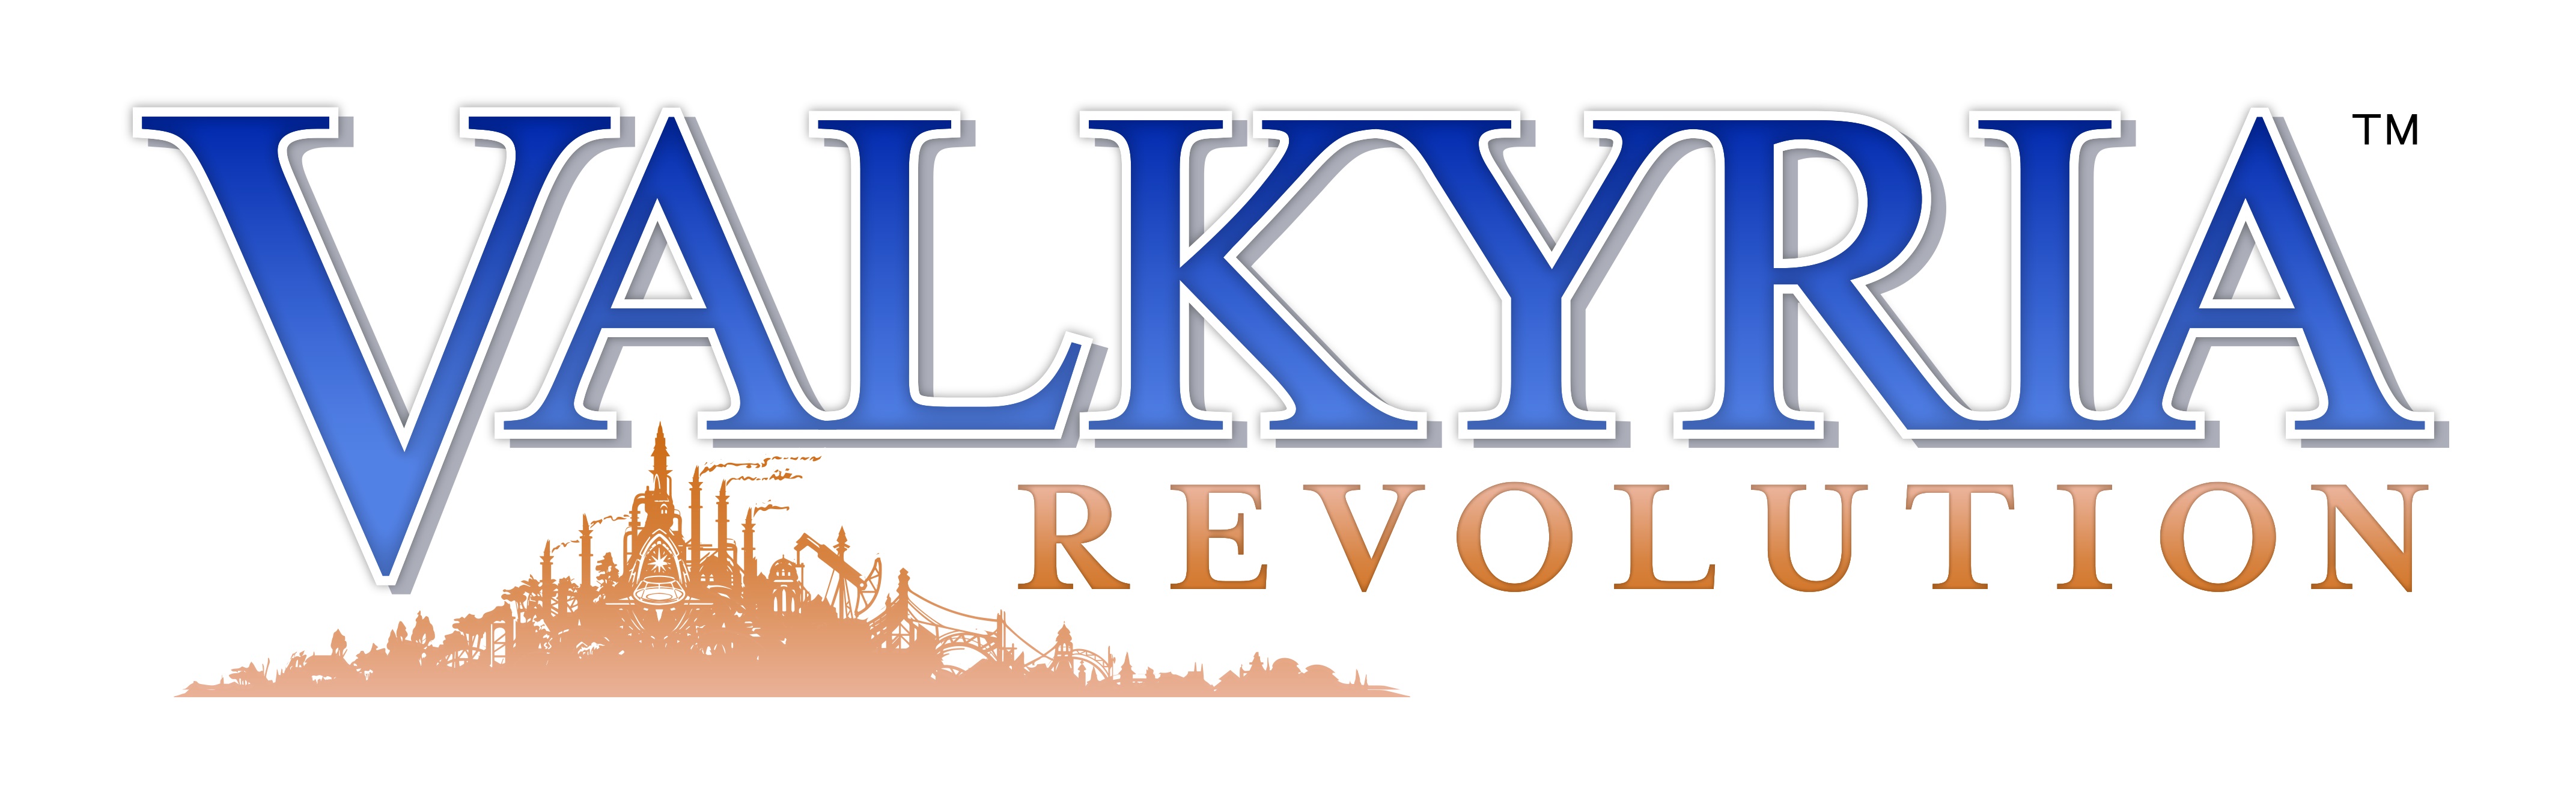 Valkyria Revolution logo